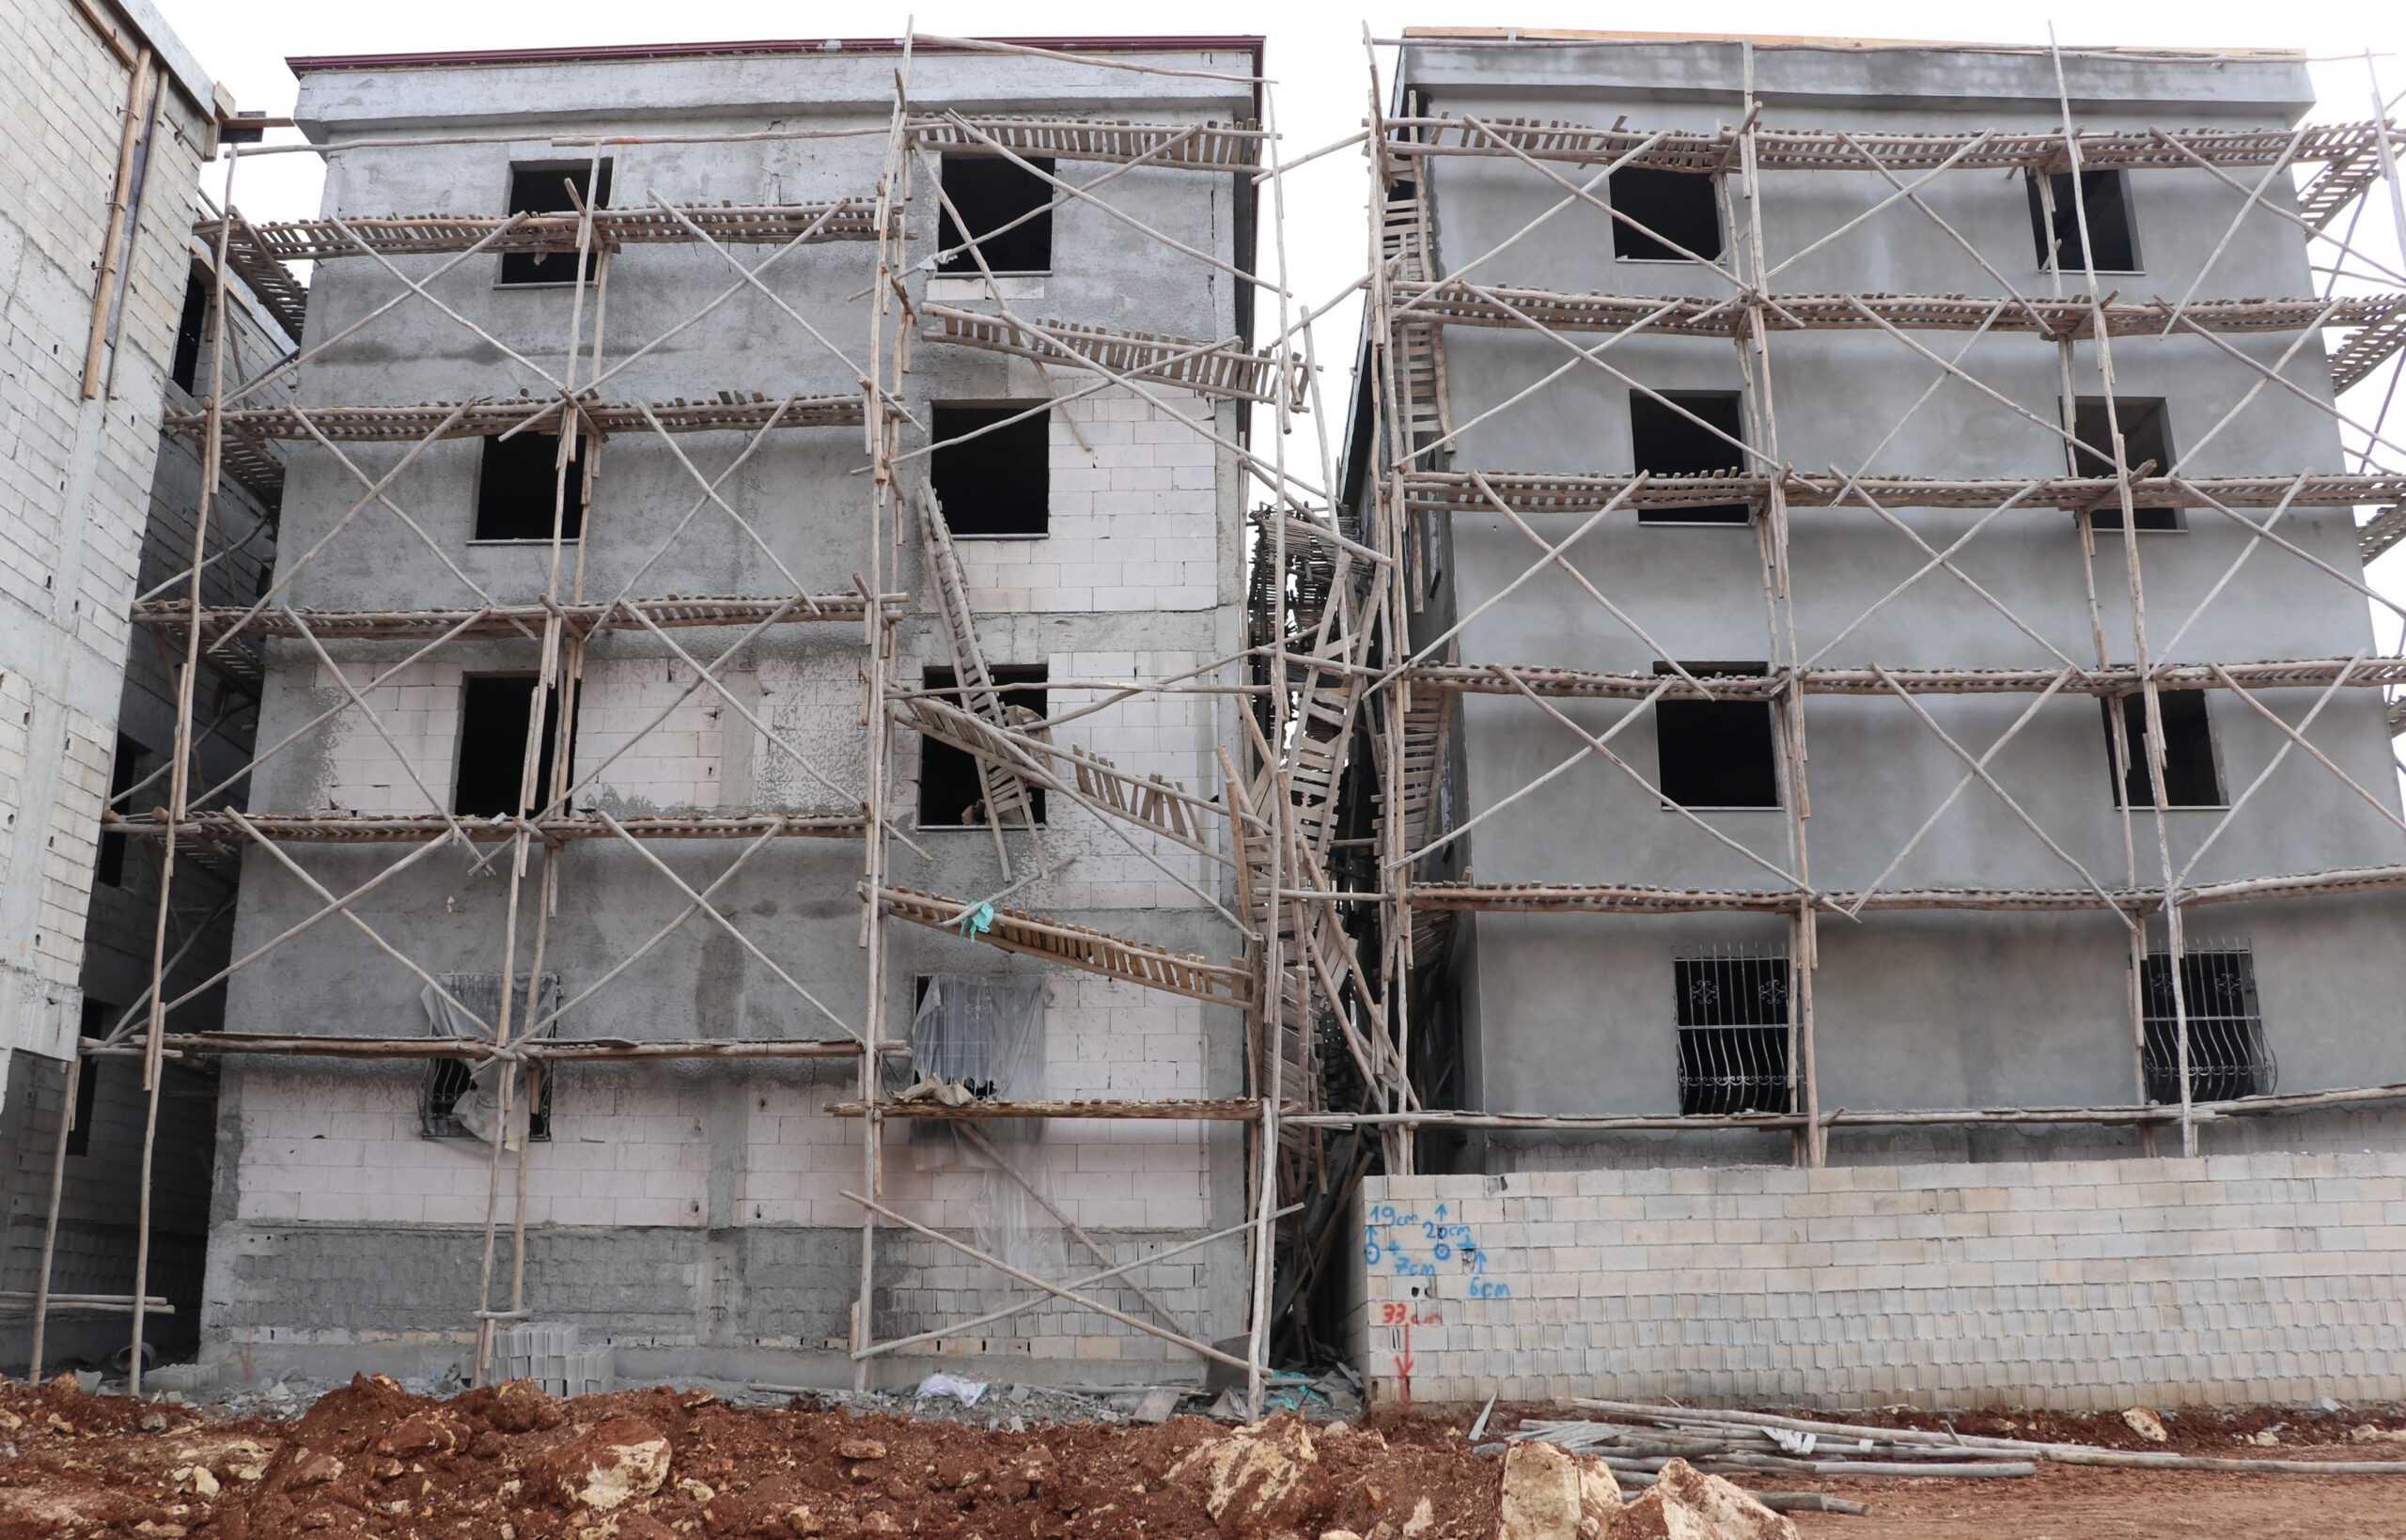 Gaziantep’te inşaat iskelesinin çökmesi sonucu 1 işçi öldü, 2 işçi yaralandı